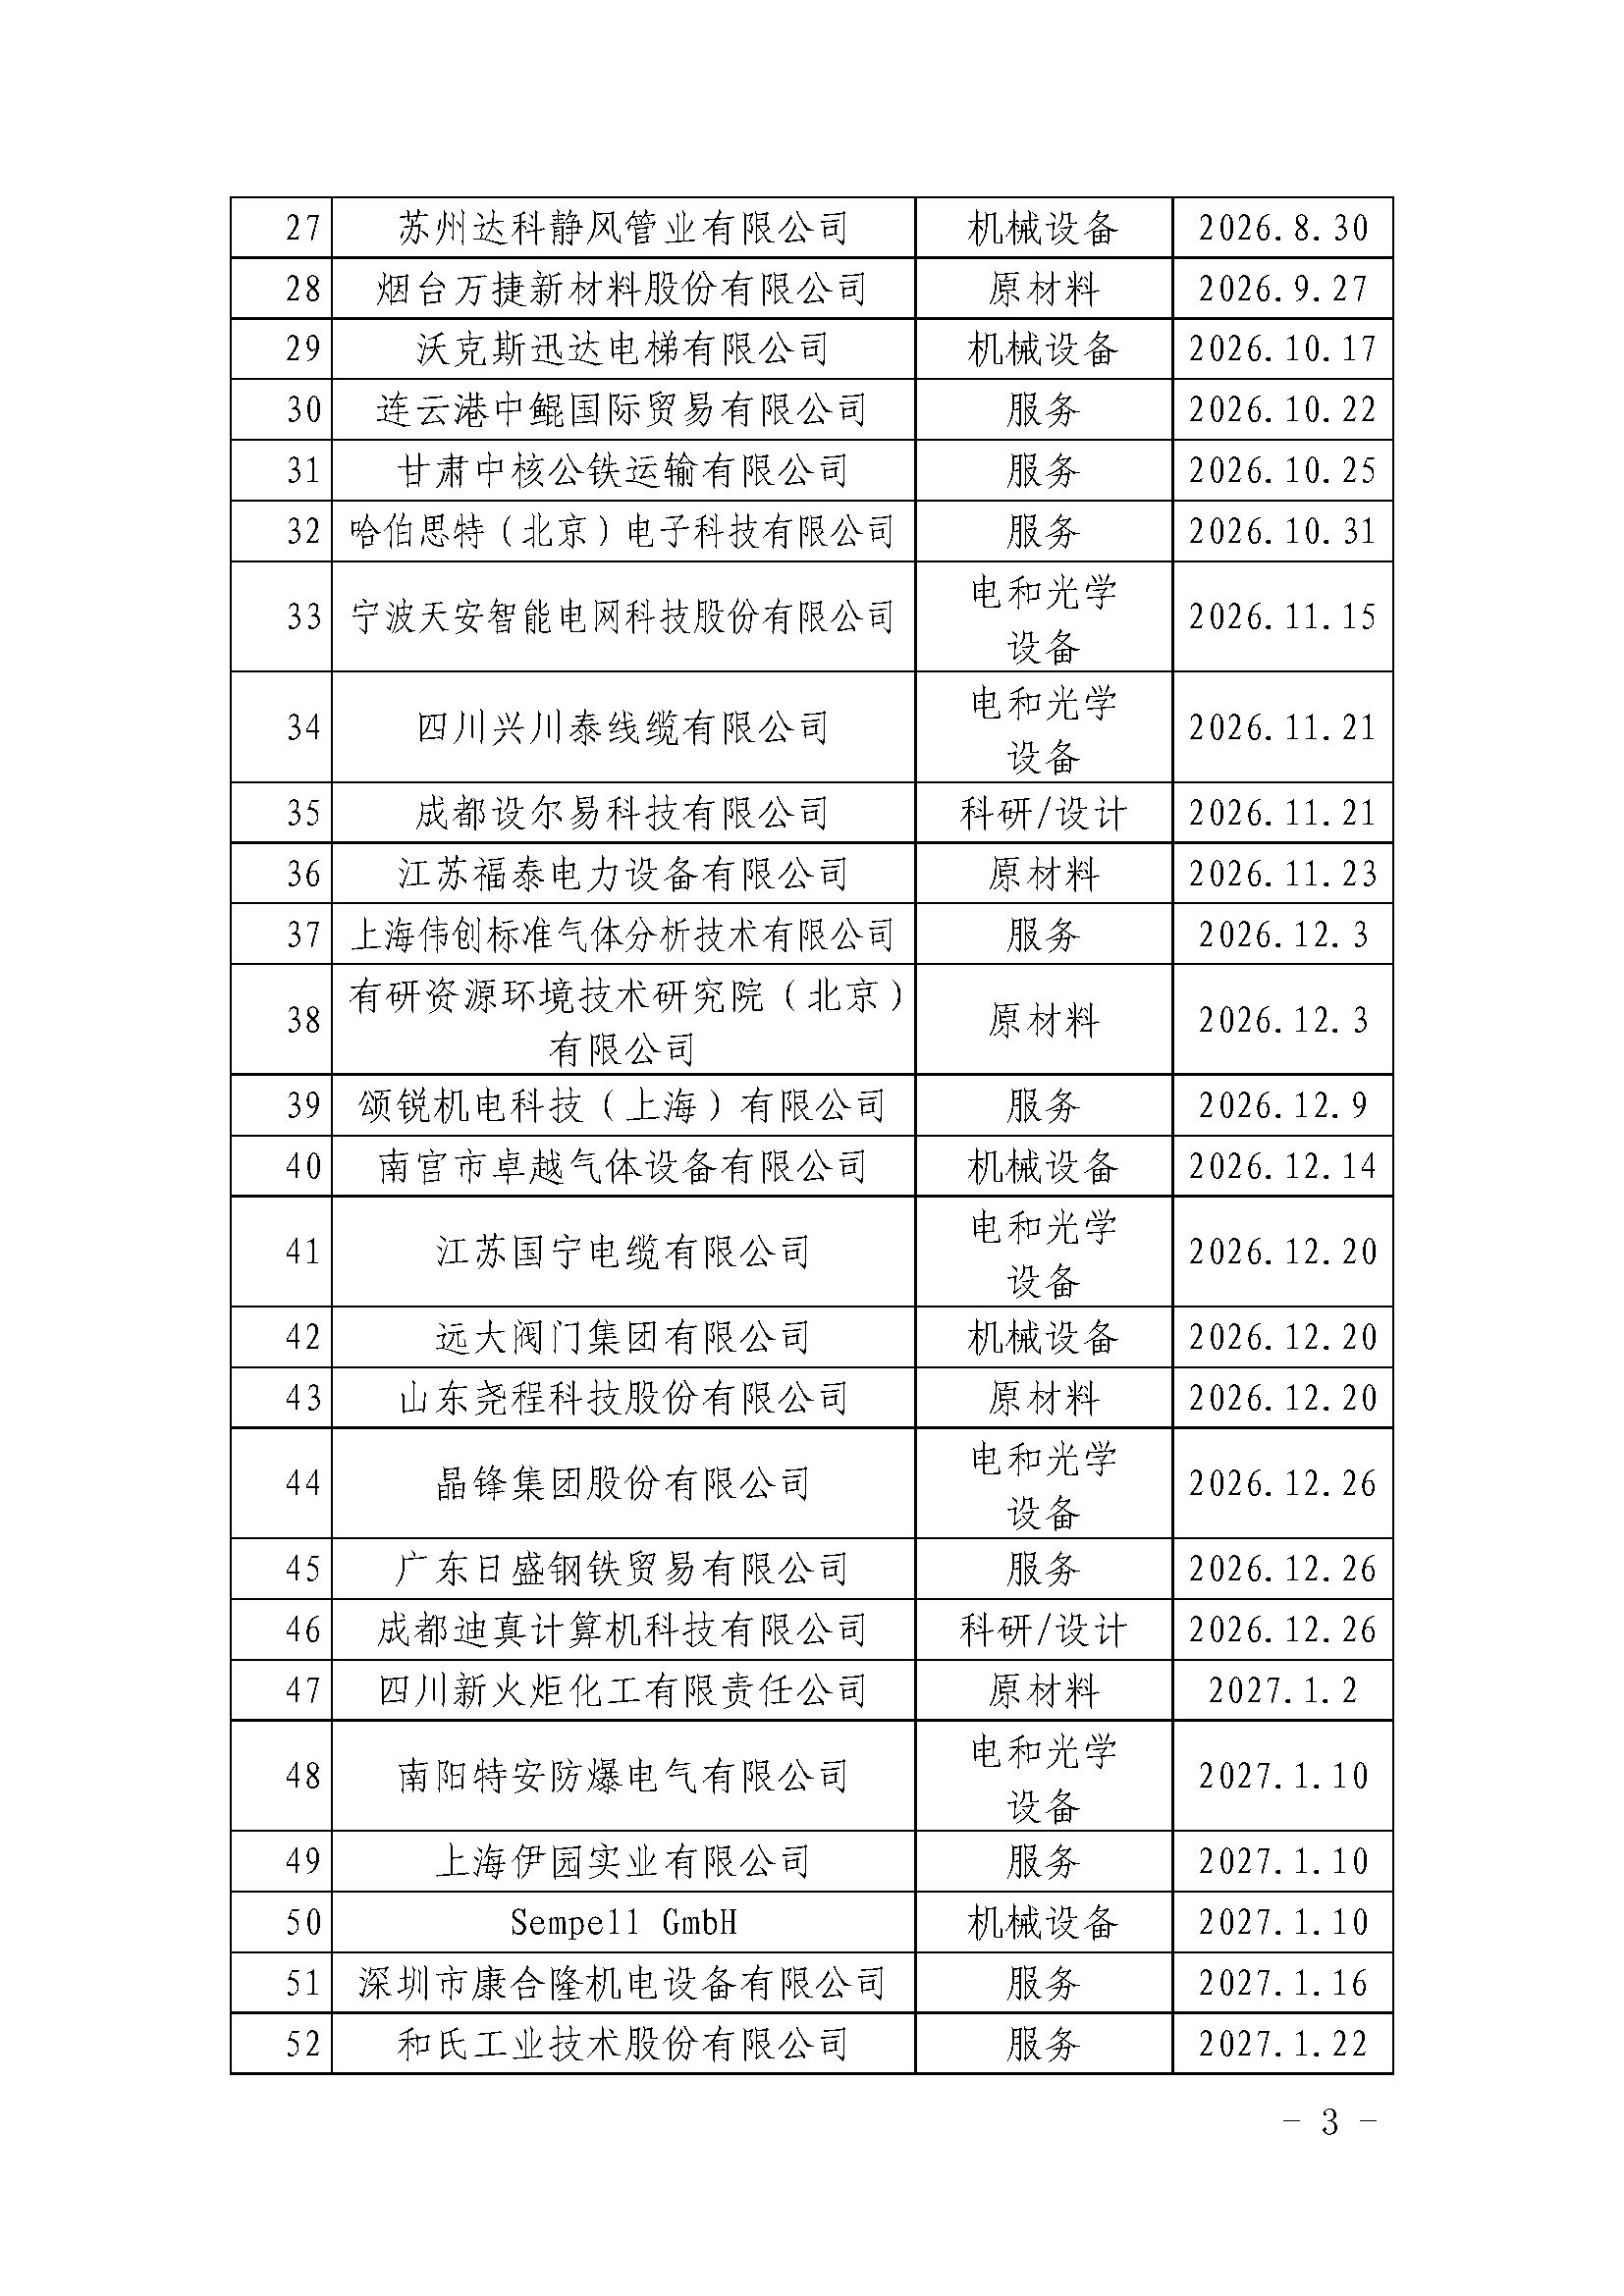 中国核能行业协会关于发布第三十批核能行业合格供应商名录的公告_页面_3.jpg